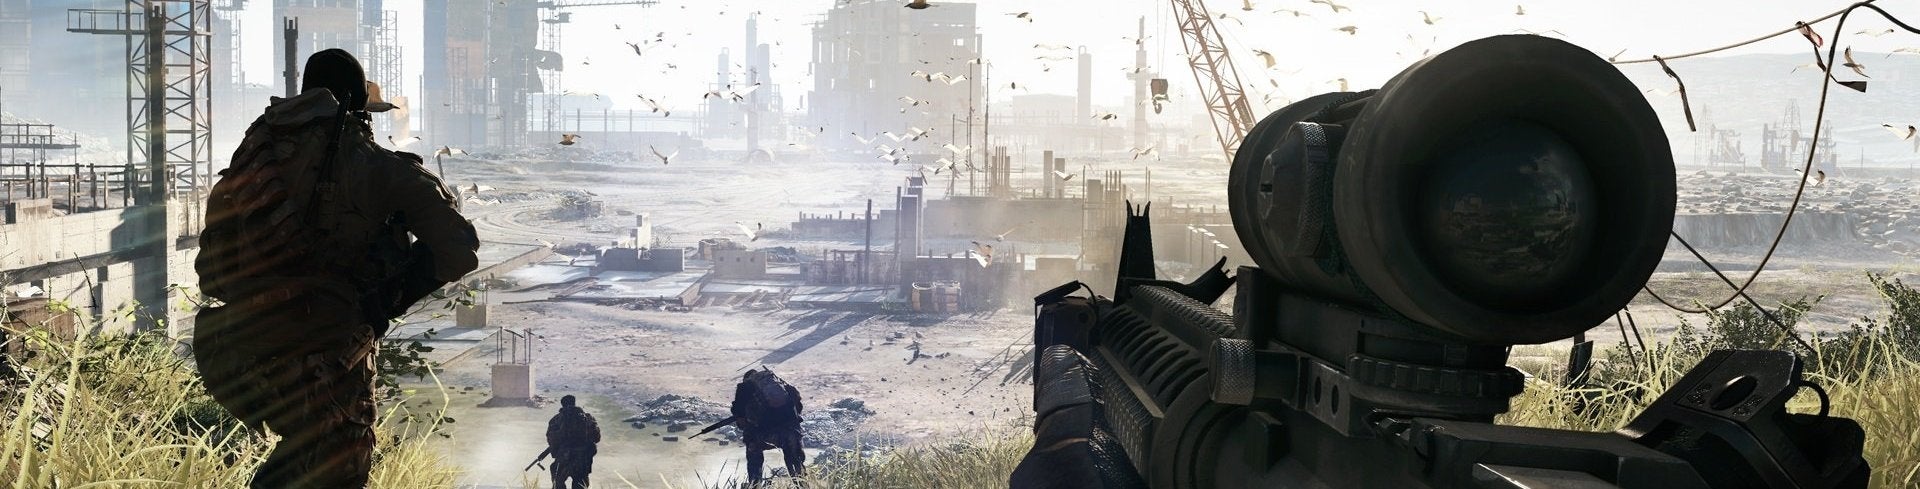 Afbeeldingen van EA-baas: 'Lancering Battlefield 4 onacceptabel'